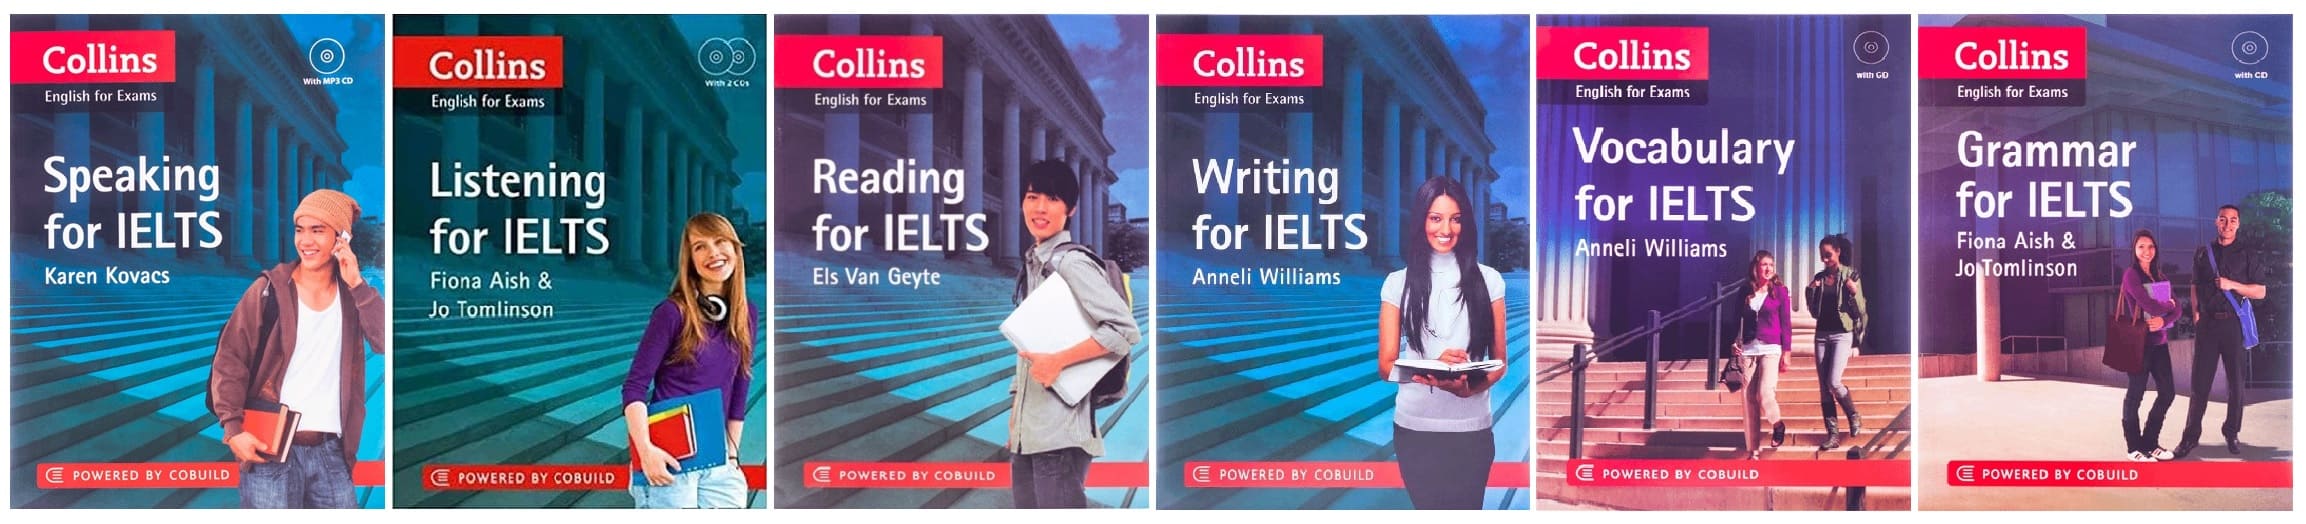 خرید کتاب زبان | کتاب زبان آیلتس | Collins english for exams for Ielts | کالینز برای آیلتس